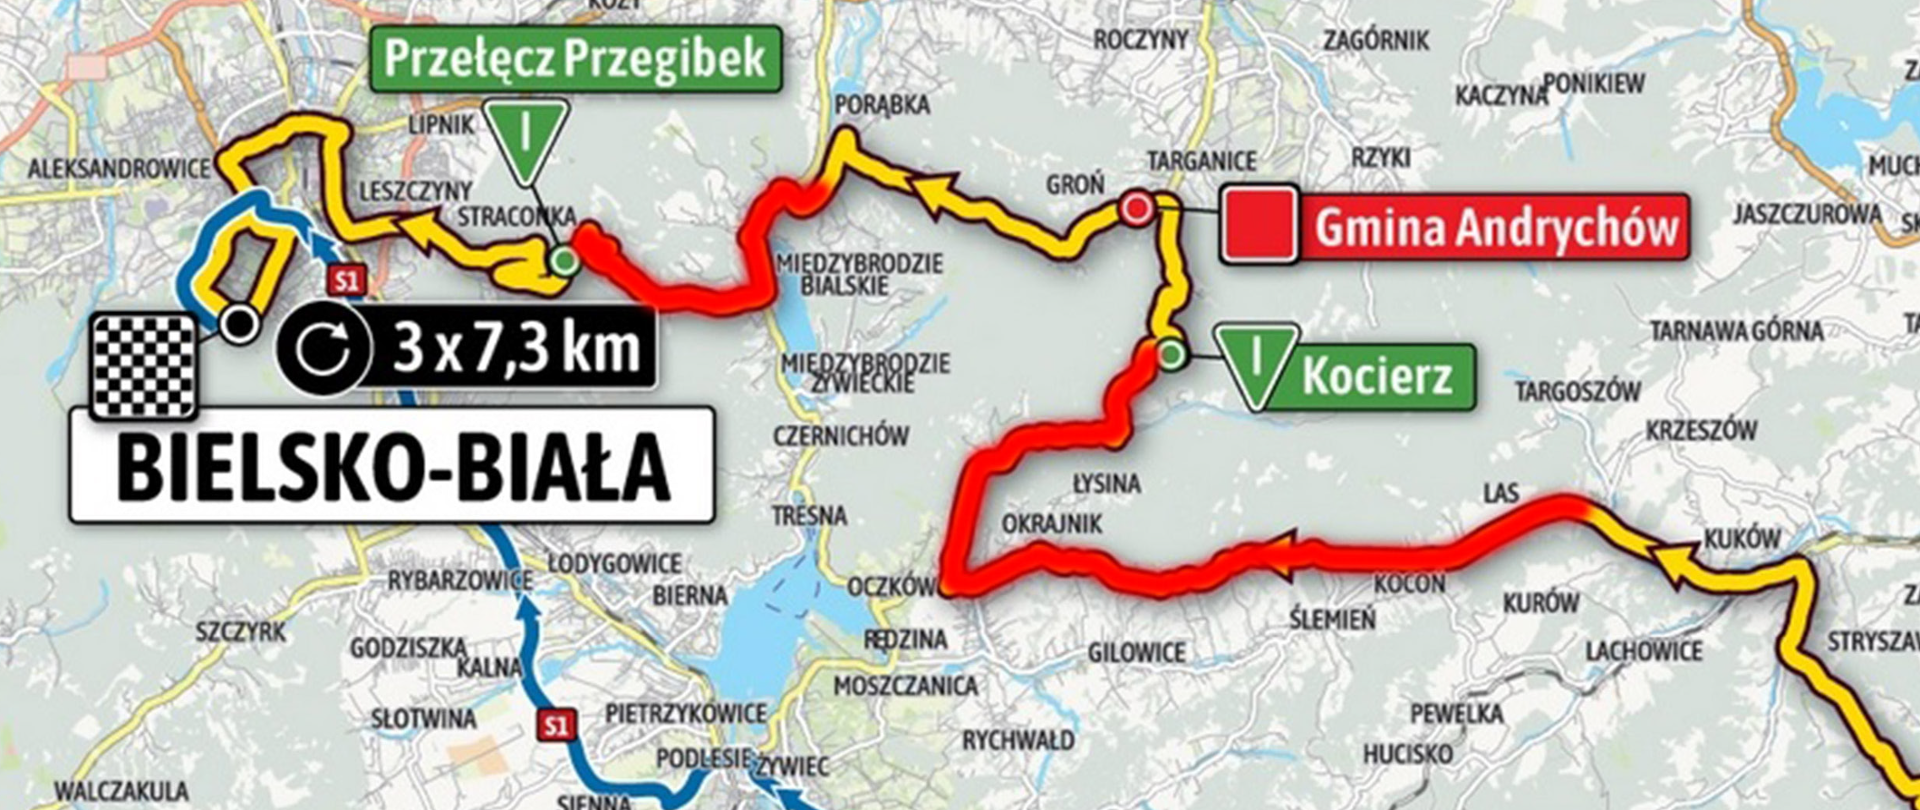 Mapa przejazdu kolarzy podczas 5 etapu 78. wyścigu Tour de Pologne